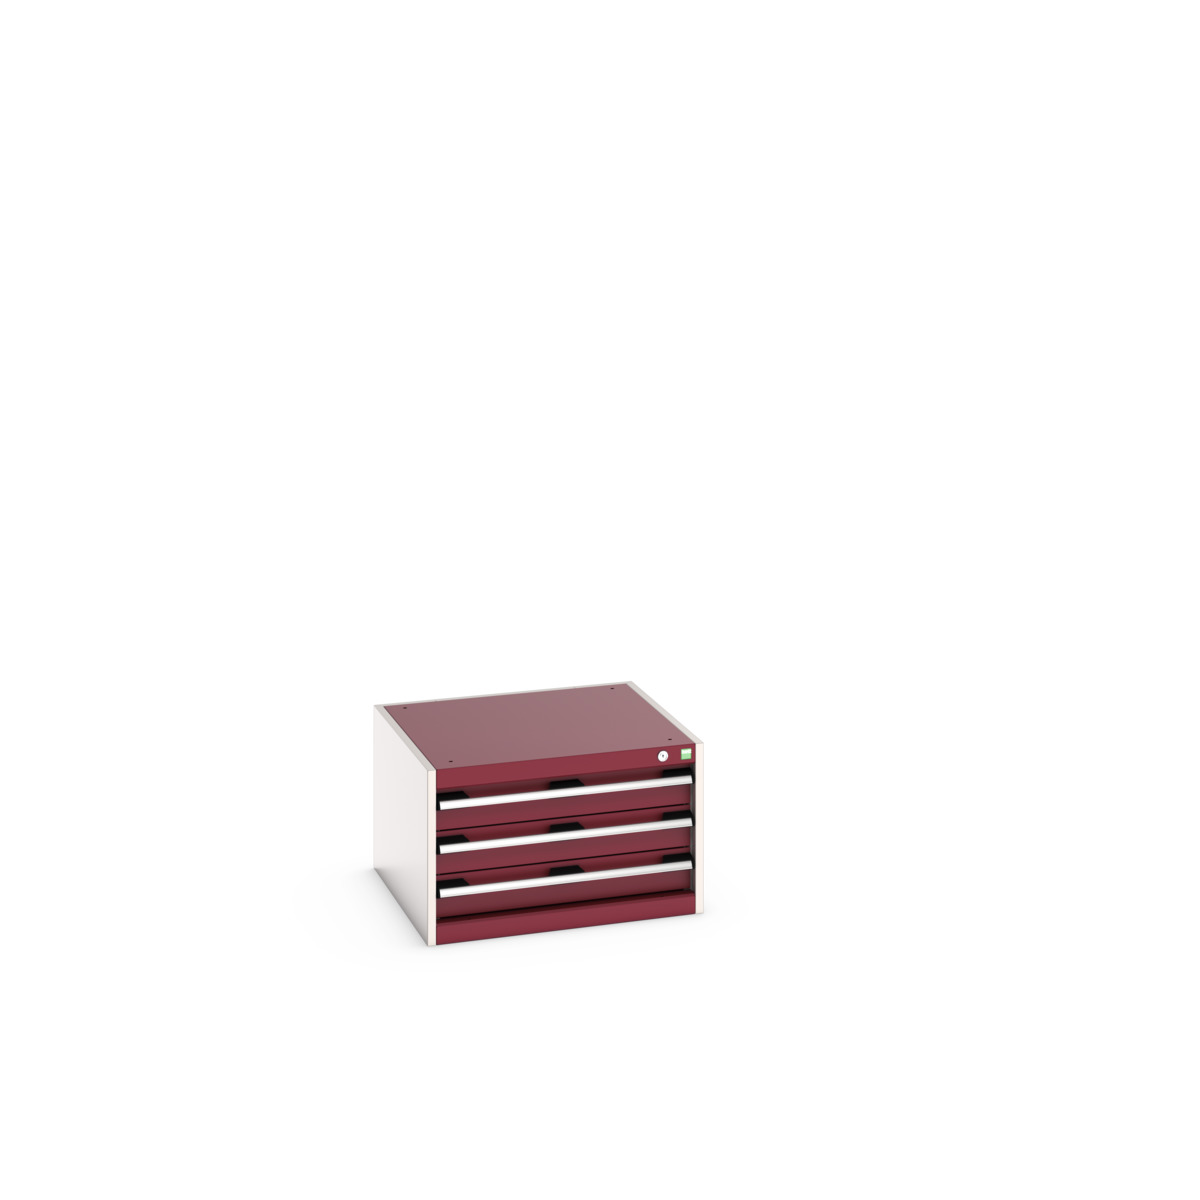 40019009.24V - cubio drawer cabinet